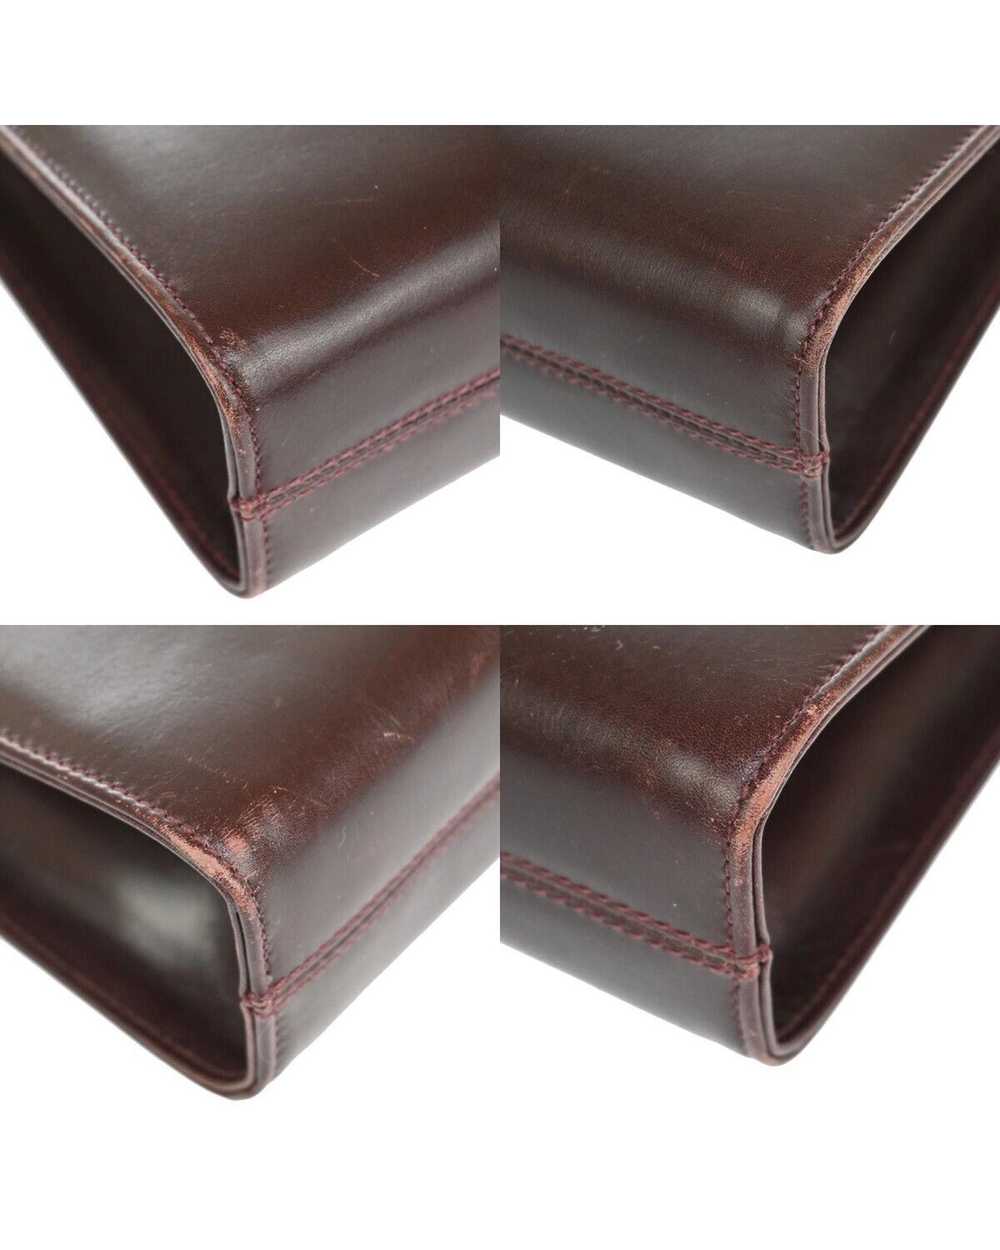 Salvatore Ferragamo Burgundy Leather Shoulder Bag - image 7